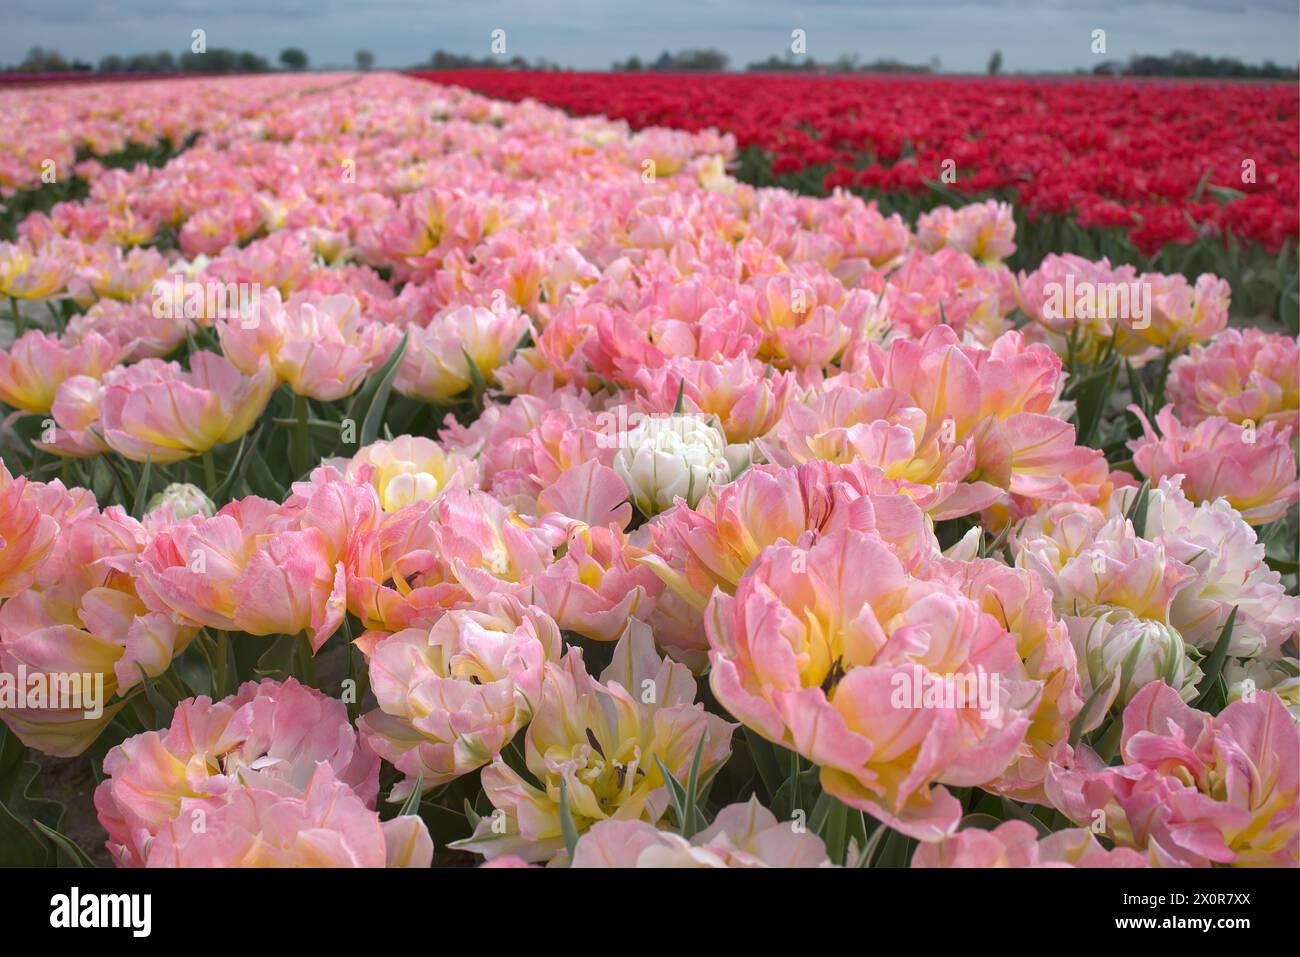 Tulpen in een veld geeft heel veel kleur in de omgeving, dit geeft aan dat de lente nu echt in aantocht is. Stock Photo